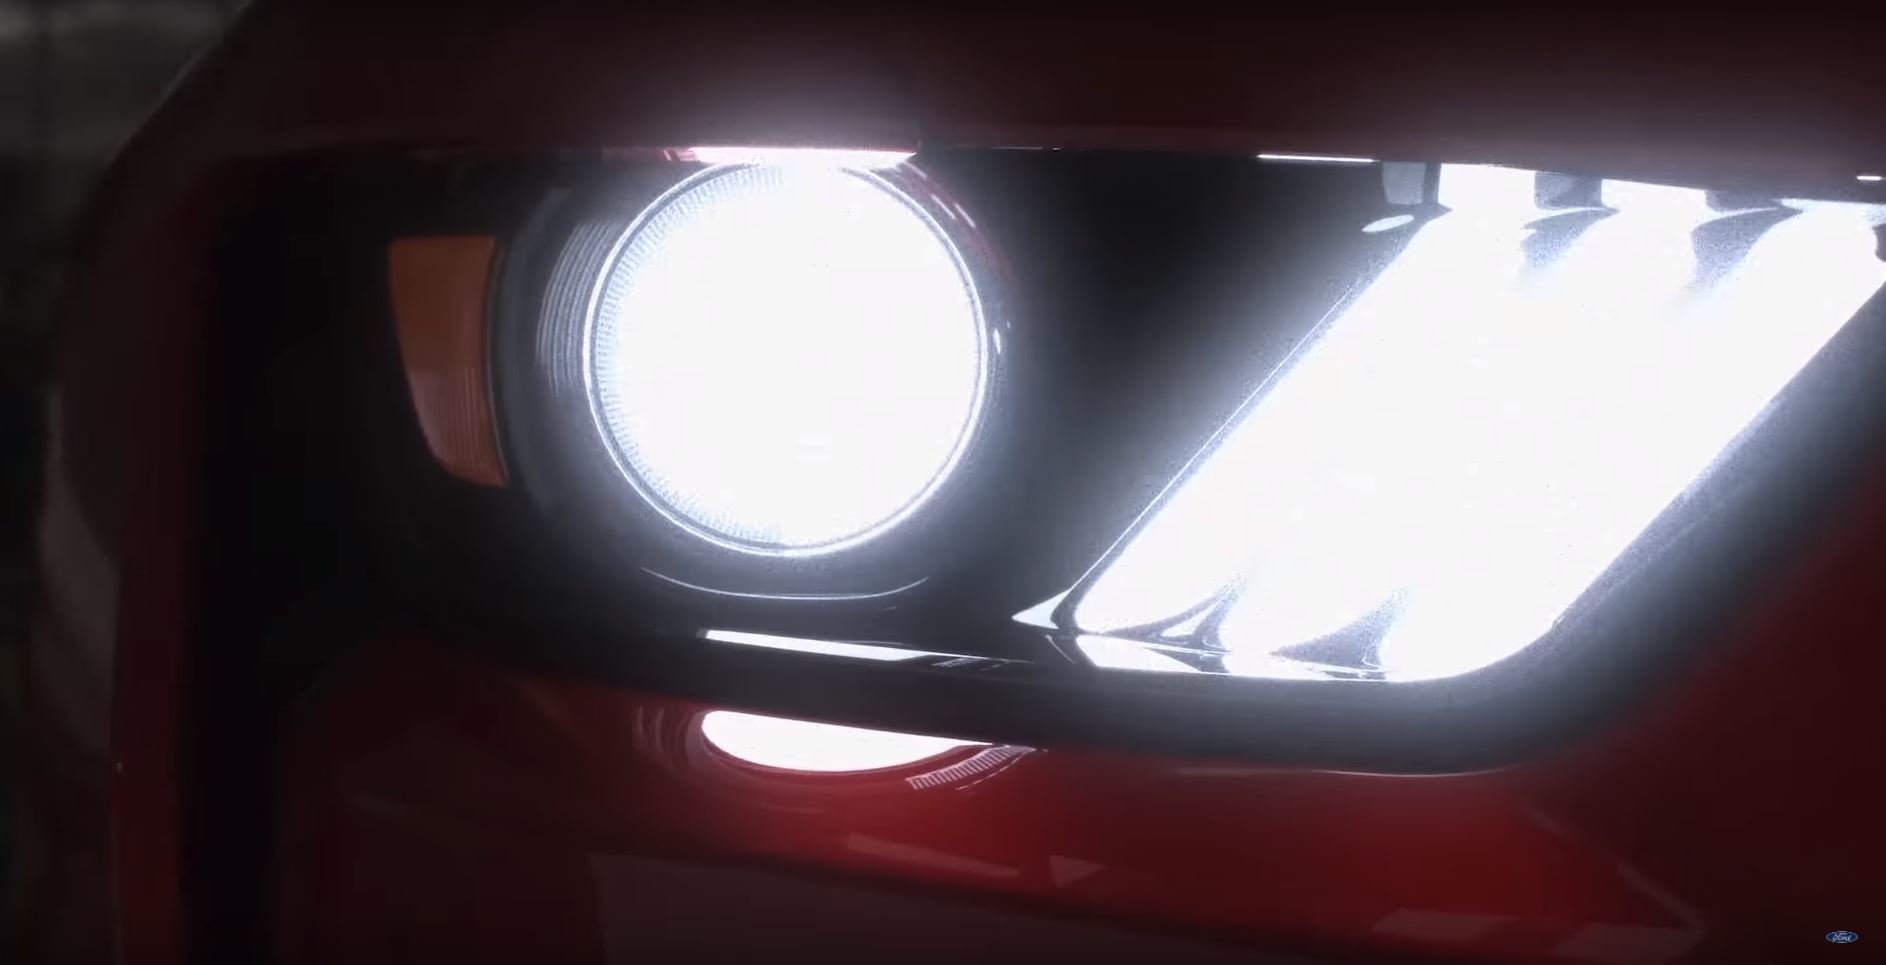 Ford potvrdil návrat legendy, Shelby Mustang GT500 dorazí v roce 2019